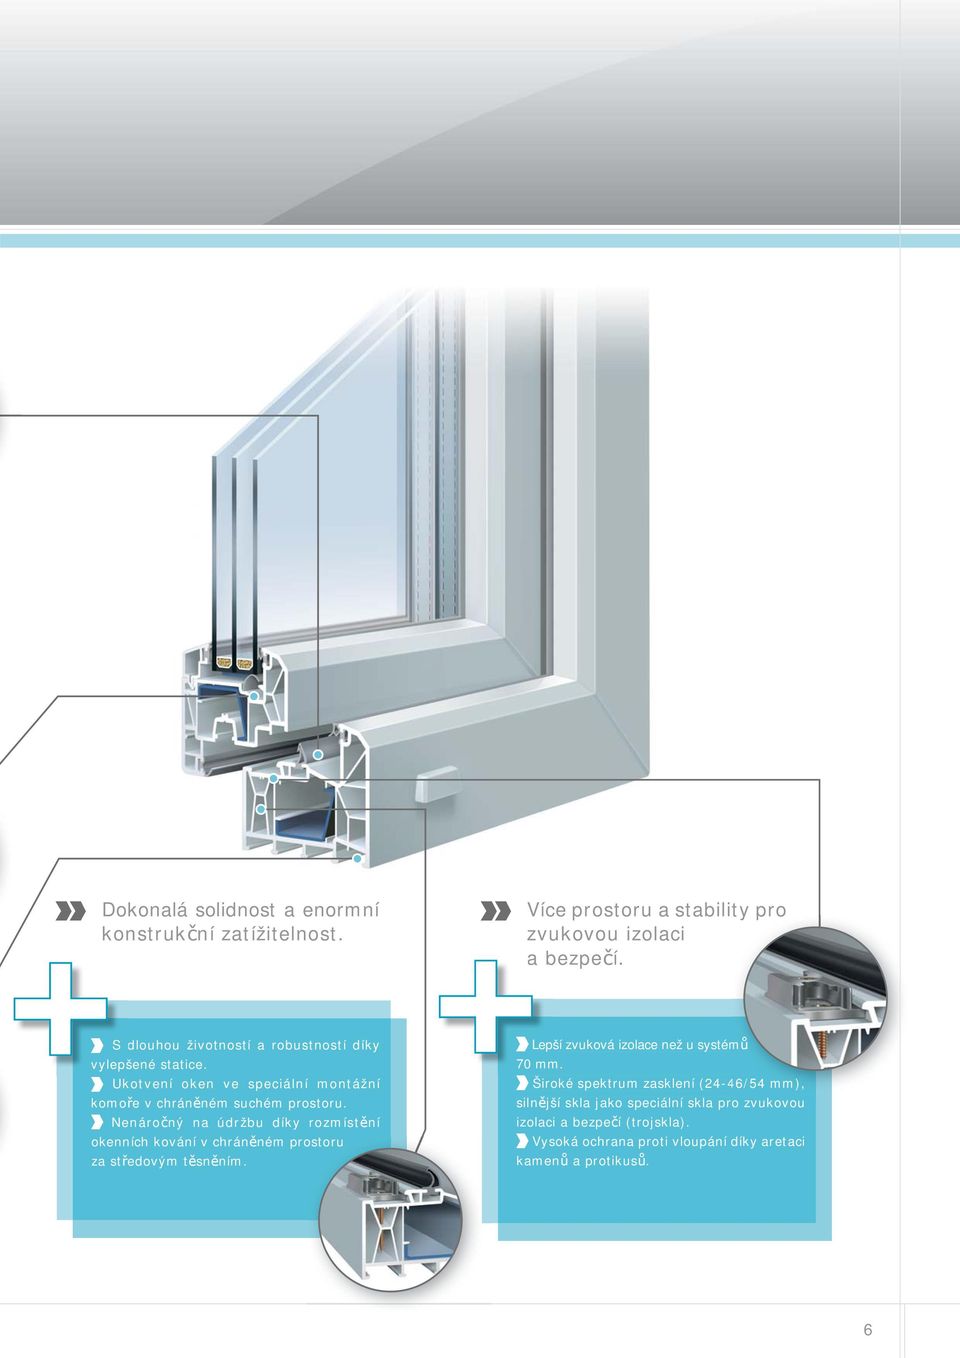 Nenáročný na údržbu díky rozmístění okenních kování v chráněném prostoru za středovým těsněním. Lepší zvuková izolace než u systémů 70 mm.